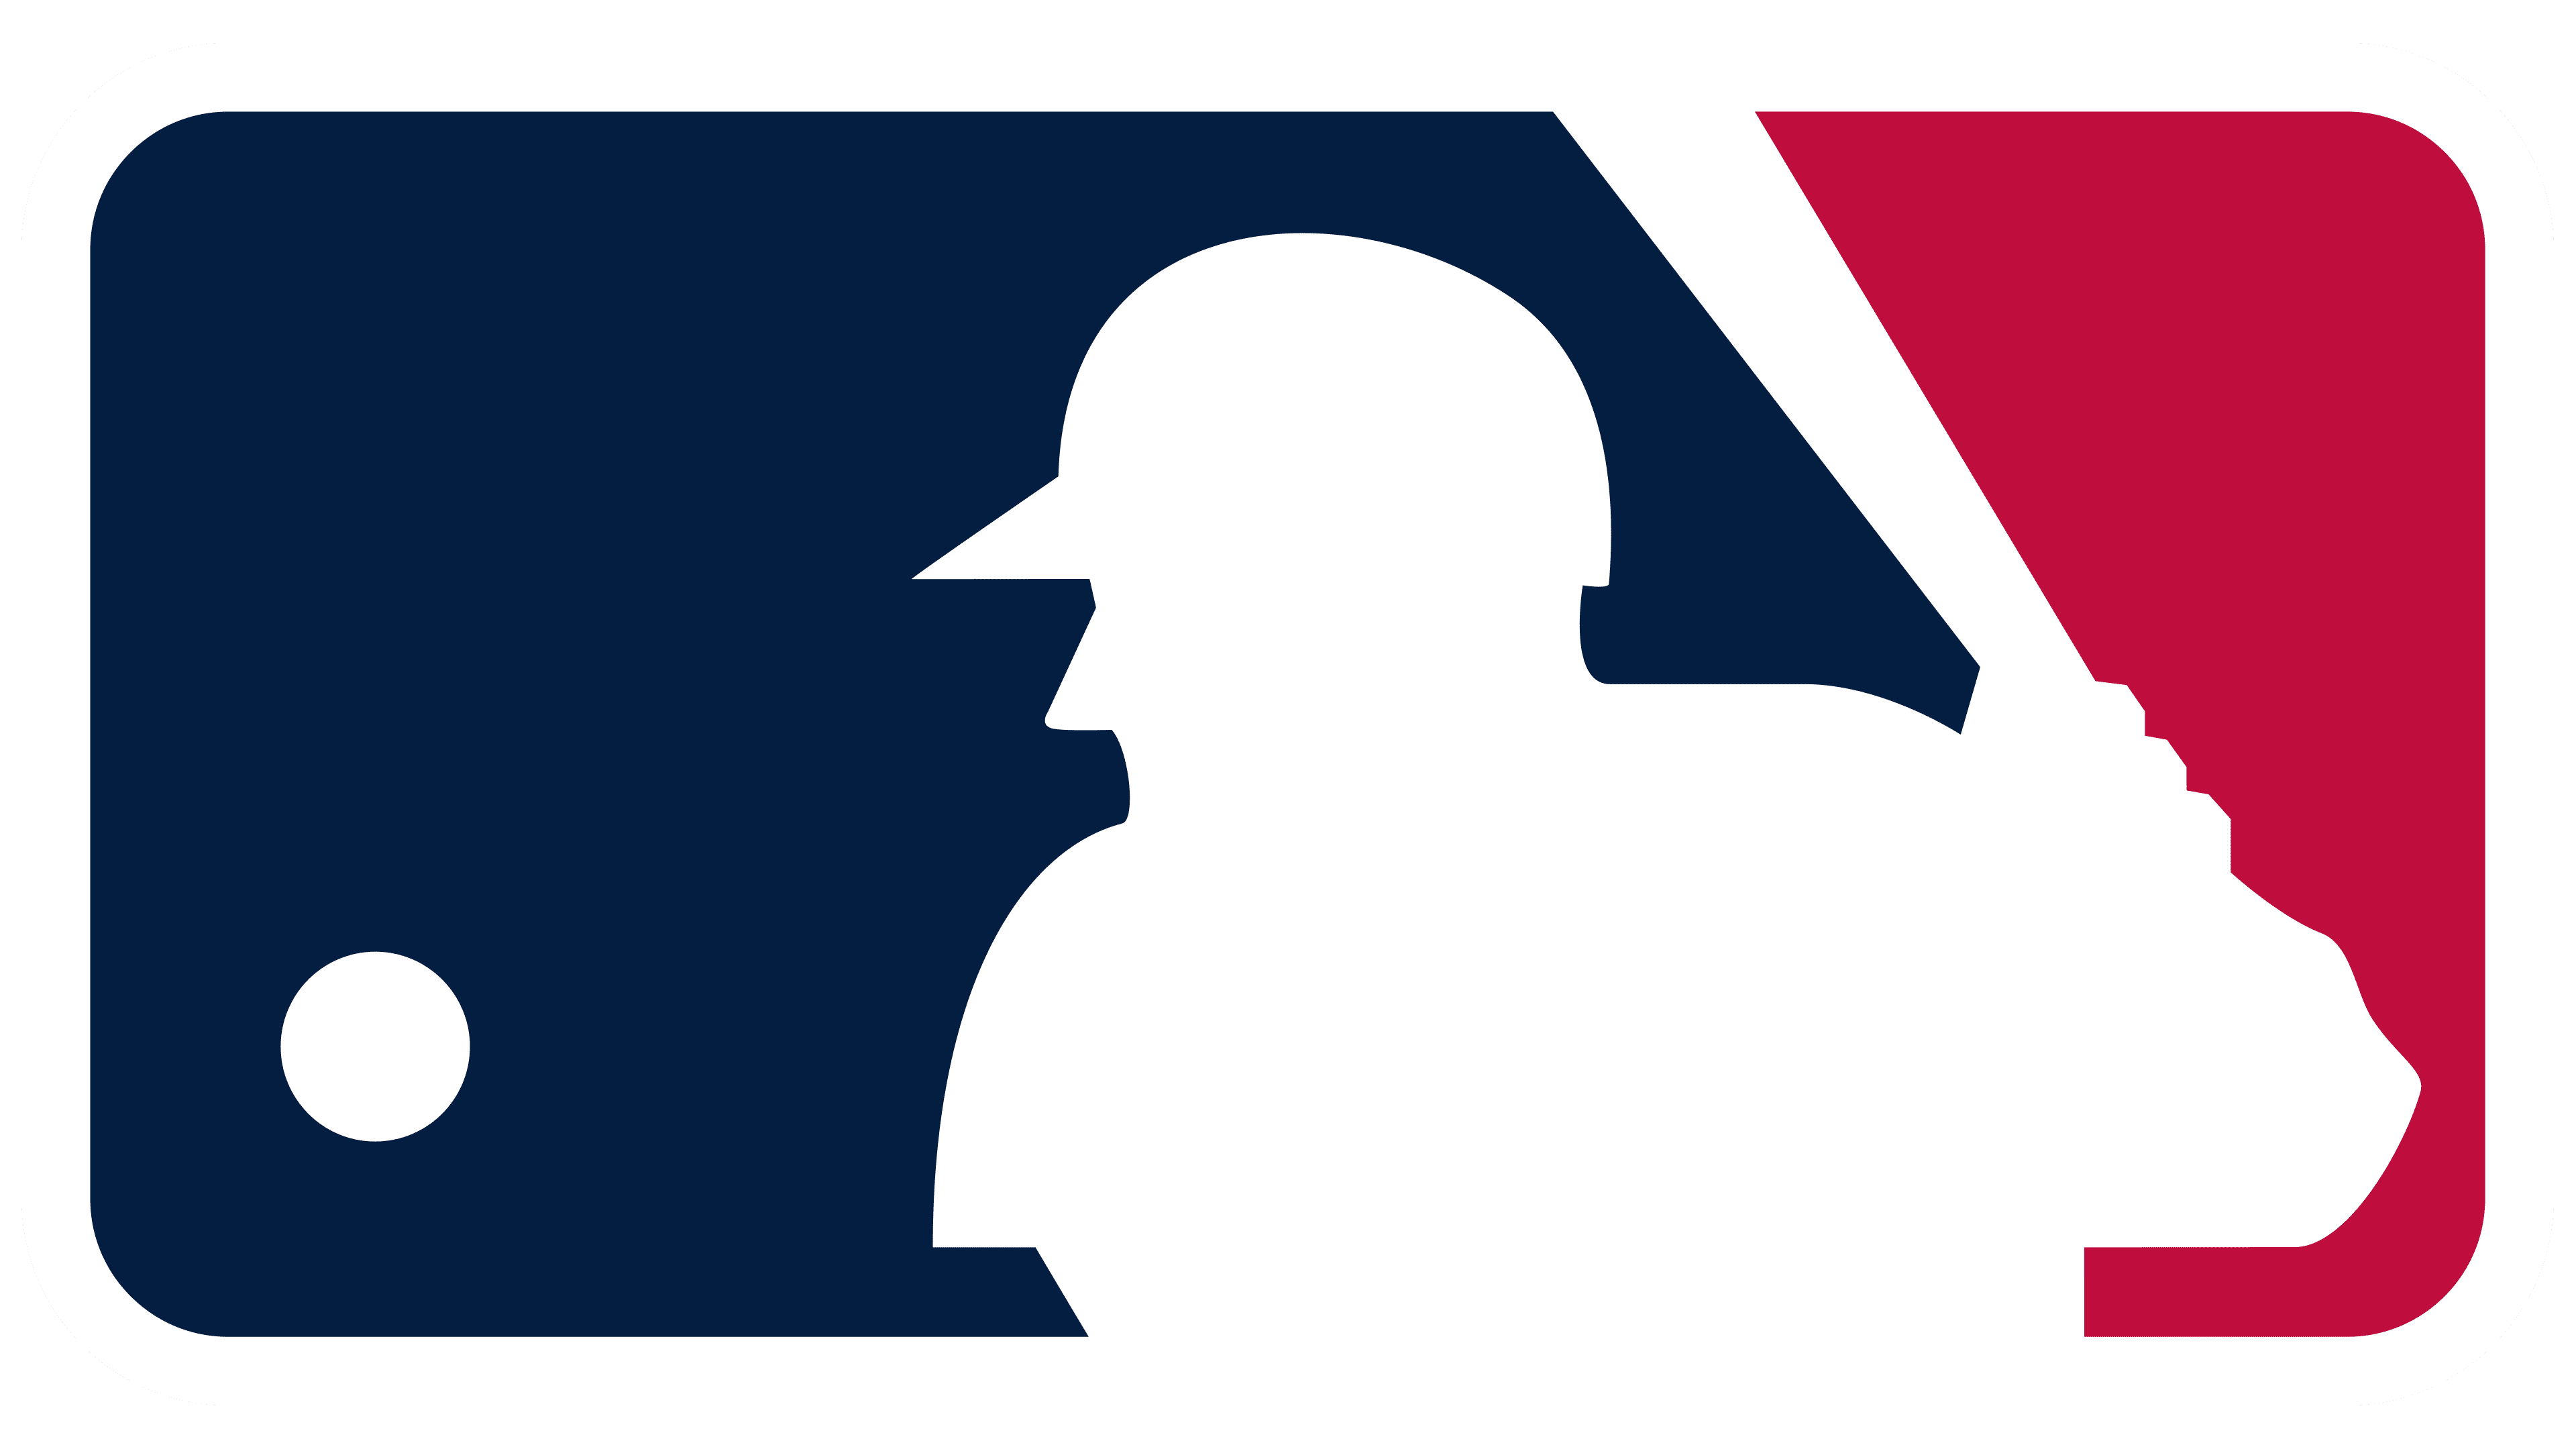 Major League Baseball (MLB) Logo